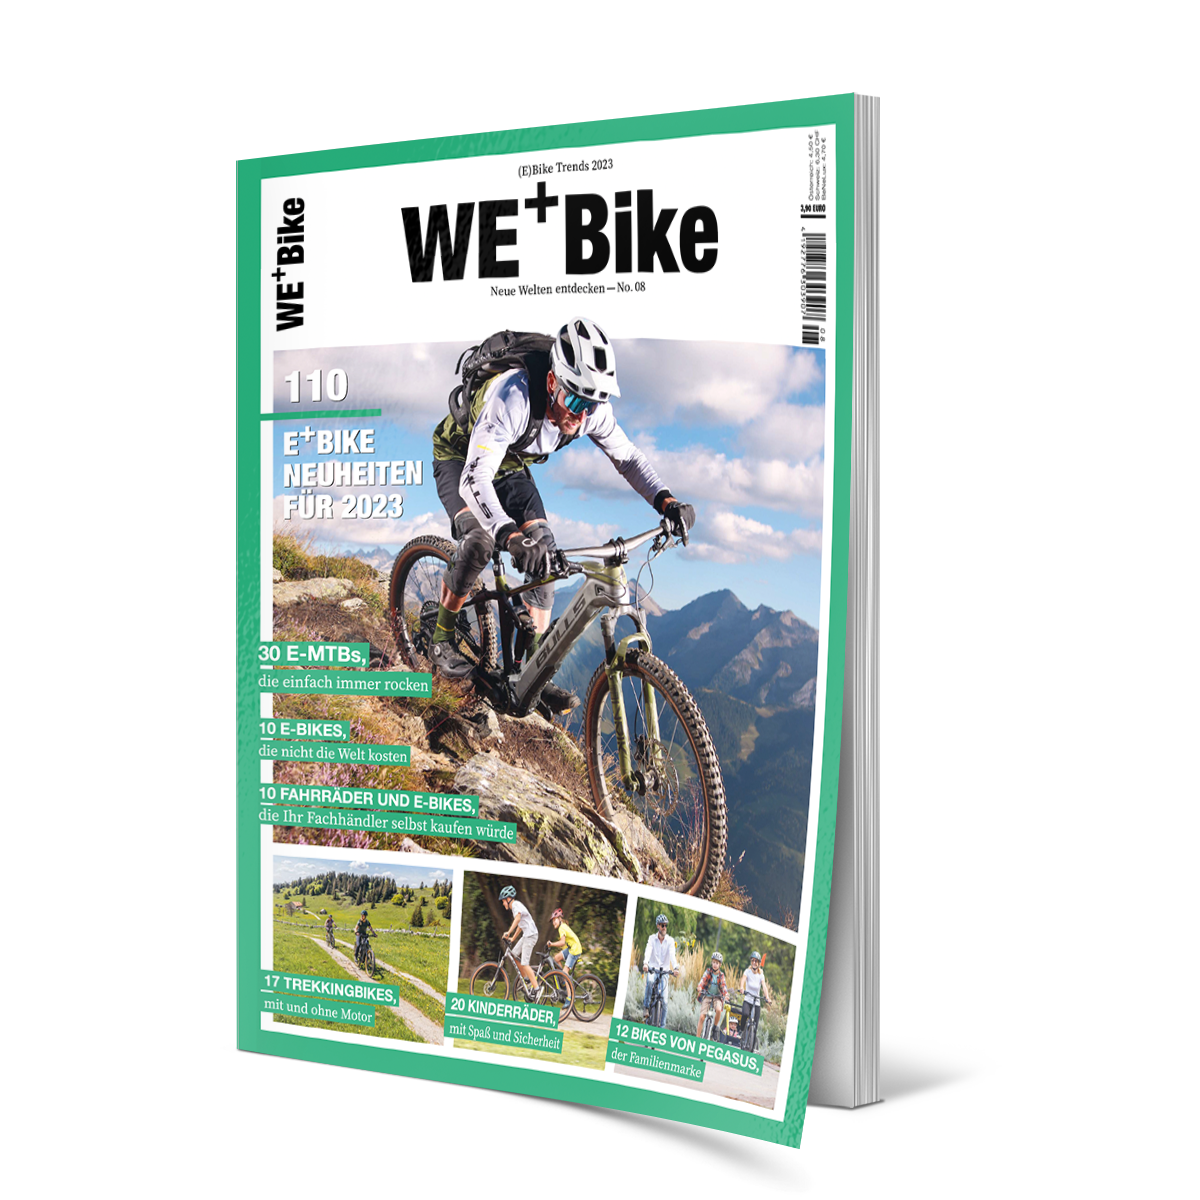 We+Bike, Zweiplus Medienagentur